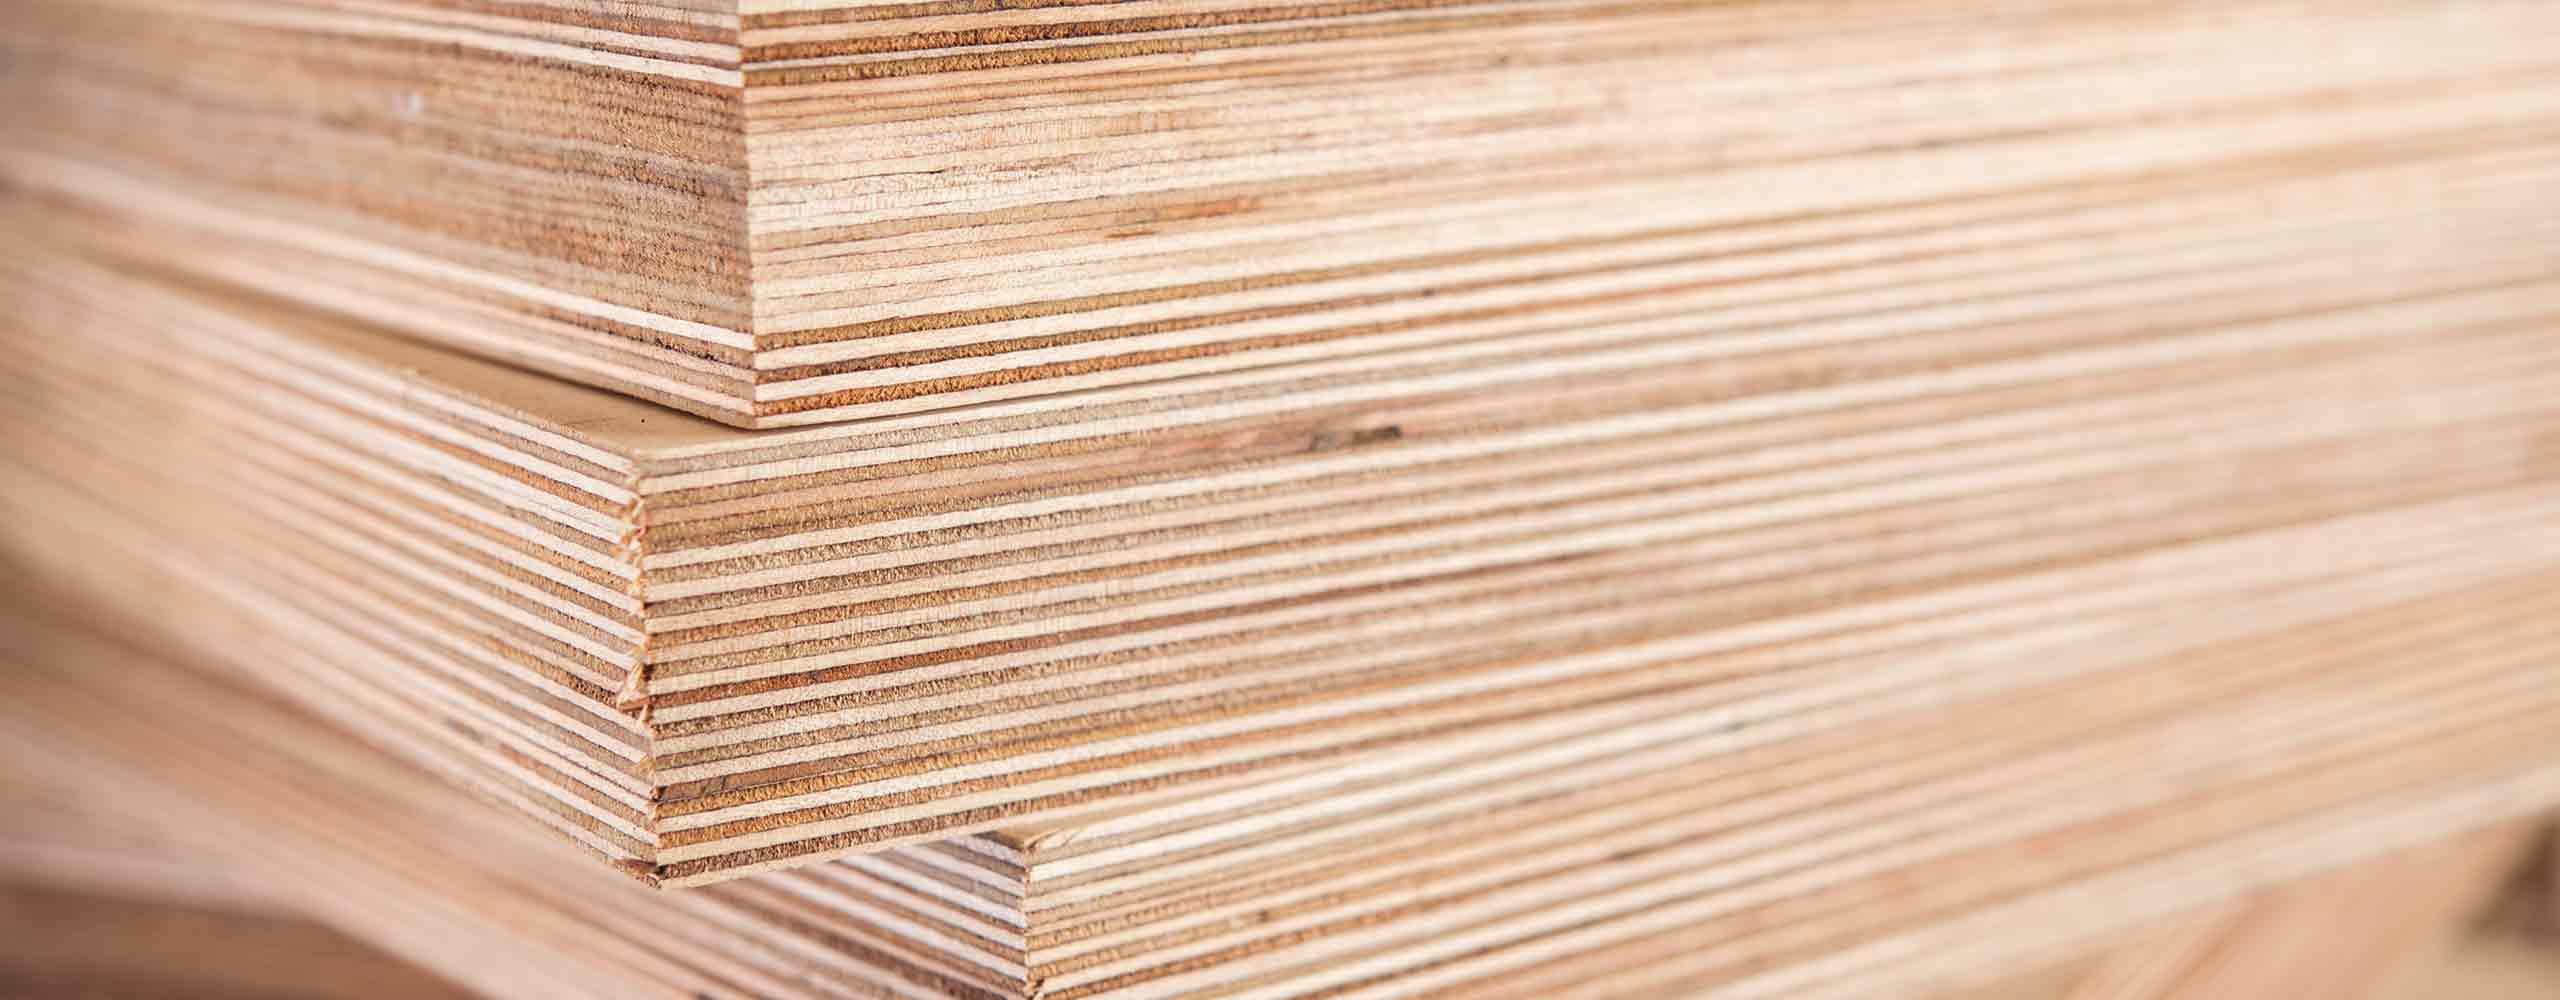 Soluções para madeira e materiais à base de madeira